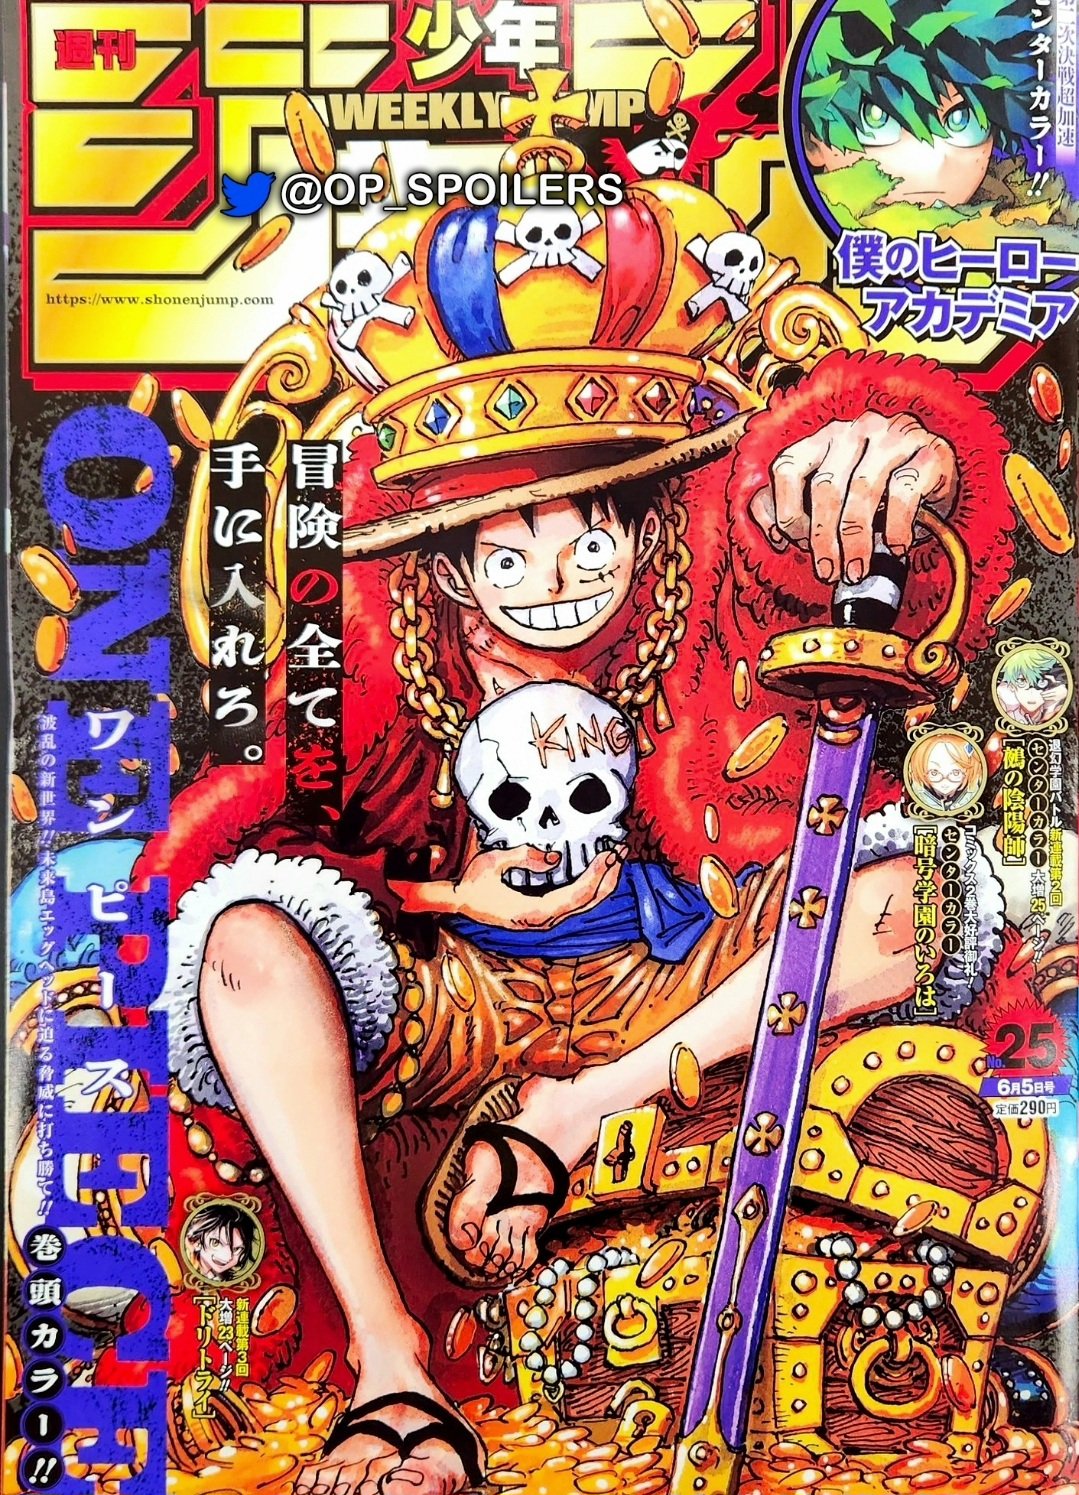 Spoiler] - 1088 Spoiler Metin ve Resimleri  One Piece Türkiye Fan Sayfası, One  Piece Türkçe Manga, One Piece Bölümler, One Piece Film